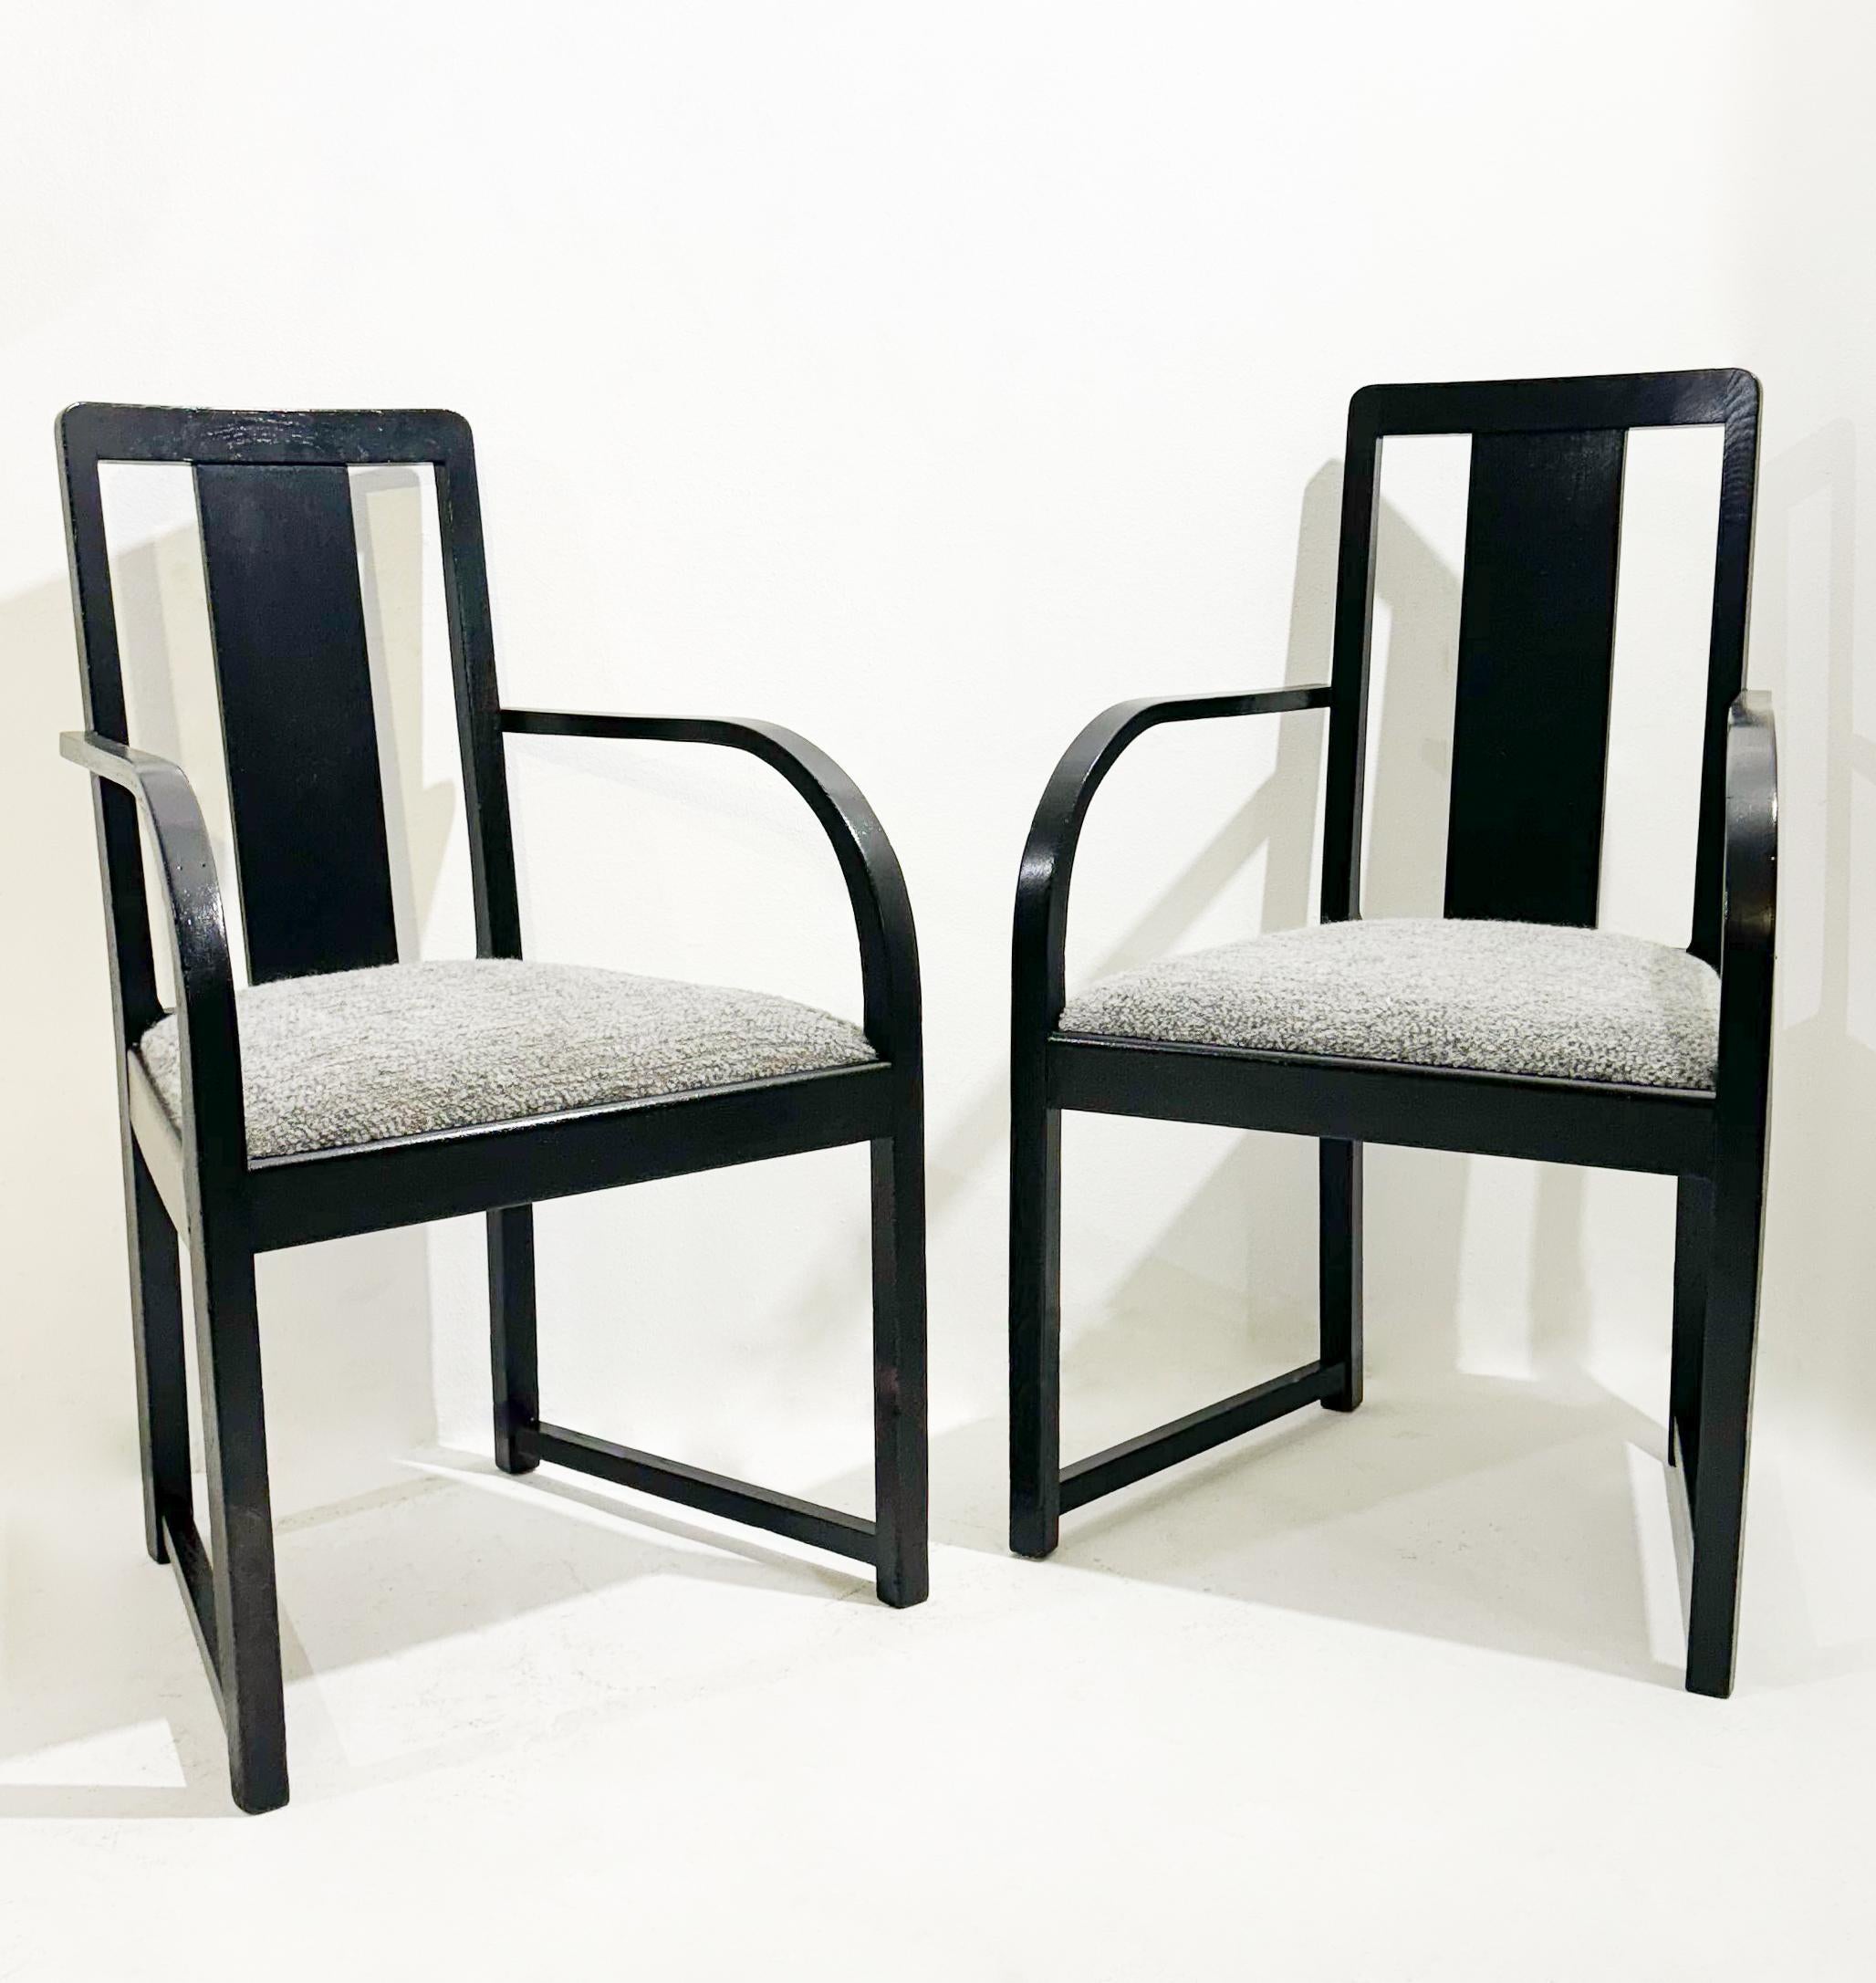 					
           
Paar Sessel aus Holz und Stoff, um 1920